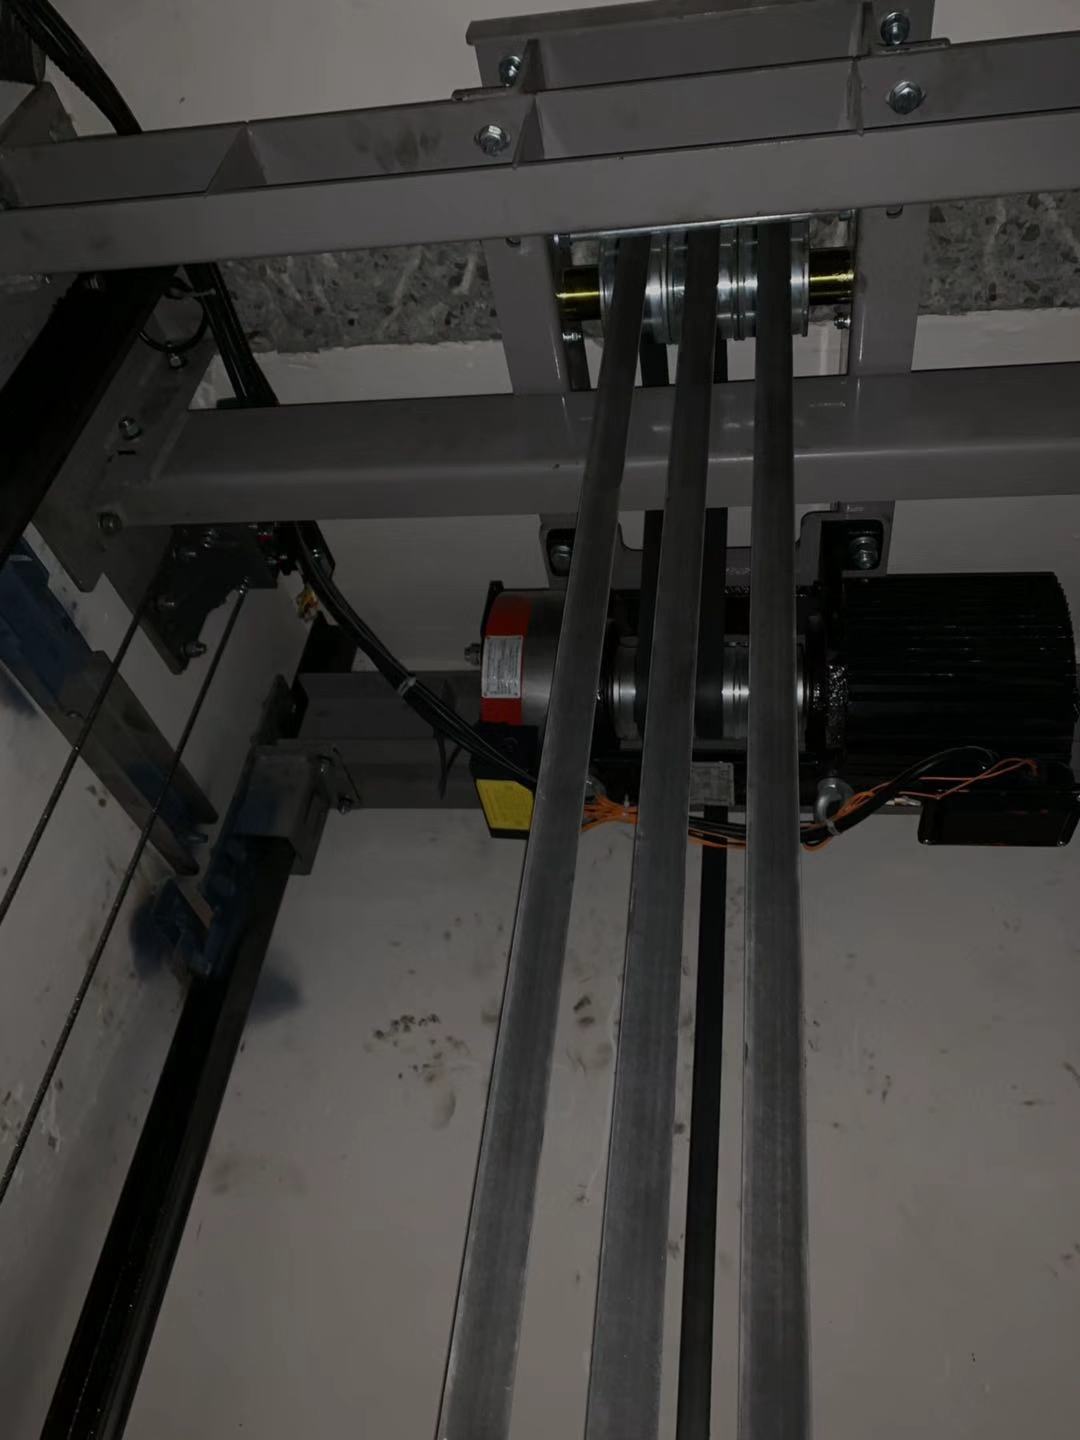 电梯钢带安装过程图图片